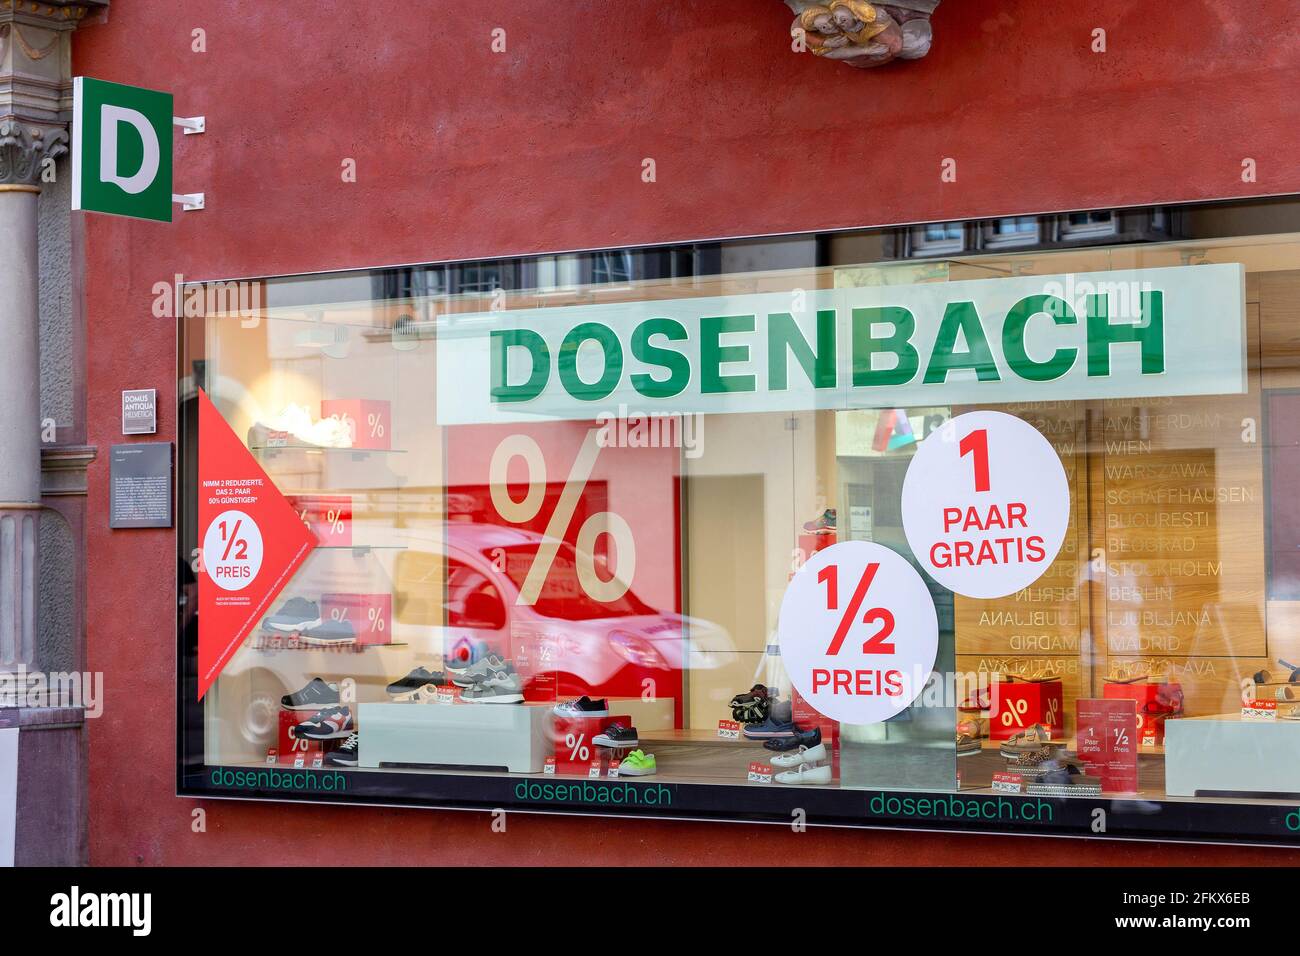 Dosenbach, tienda de zapatos Foto de stock